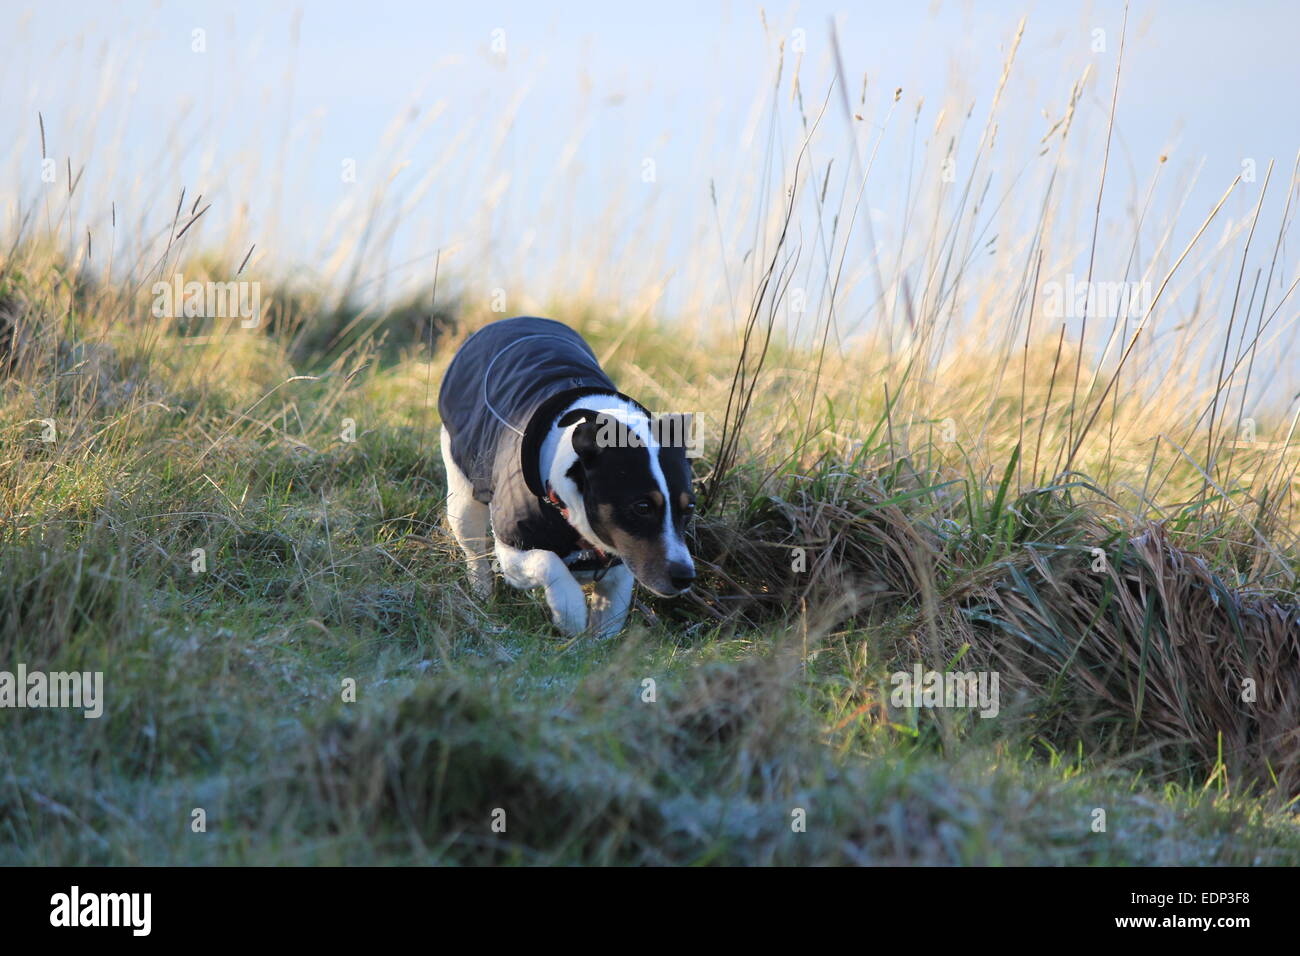 Ein Jack Russell zeigt stolz seine neuen Wintermantel, während in den frostigen Rasen herumlungernd... Stockfoto